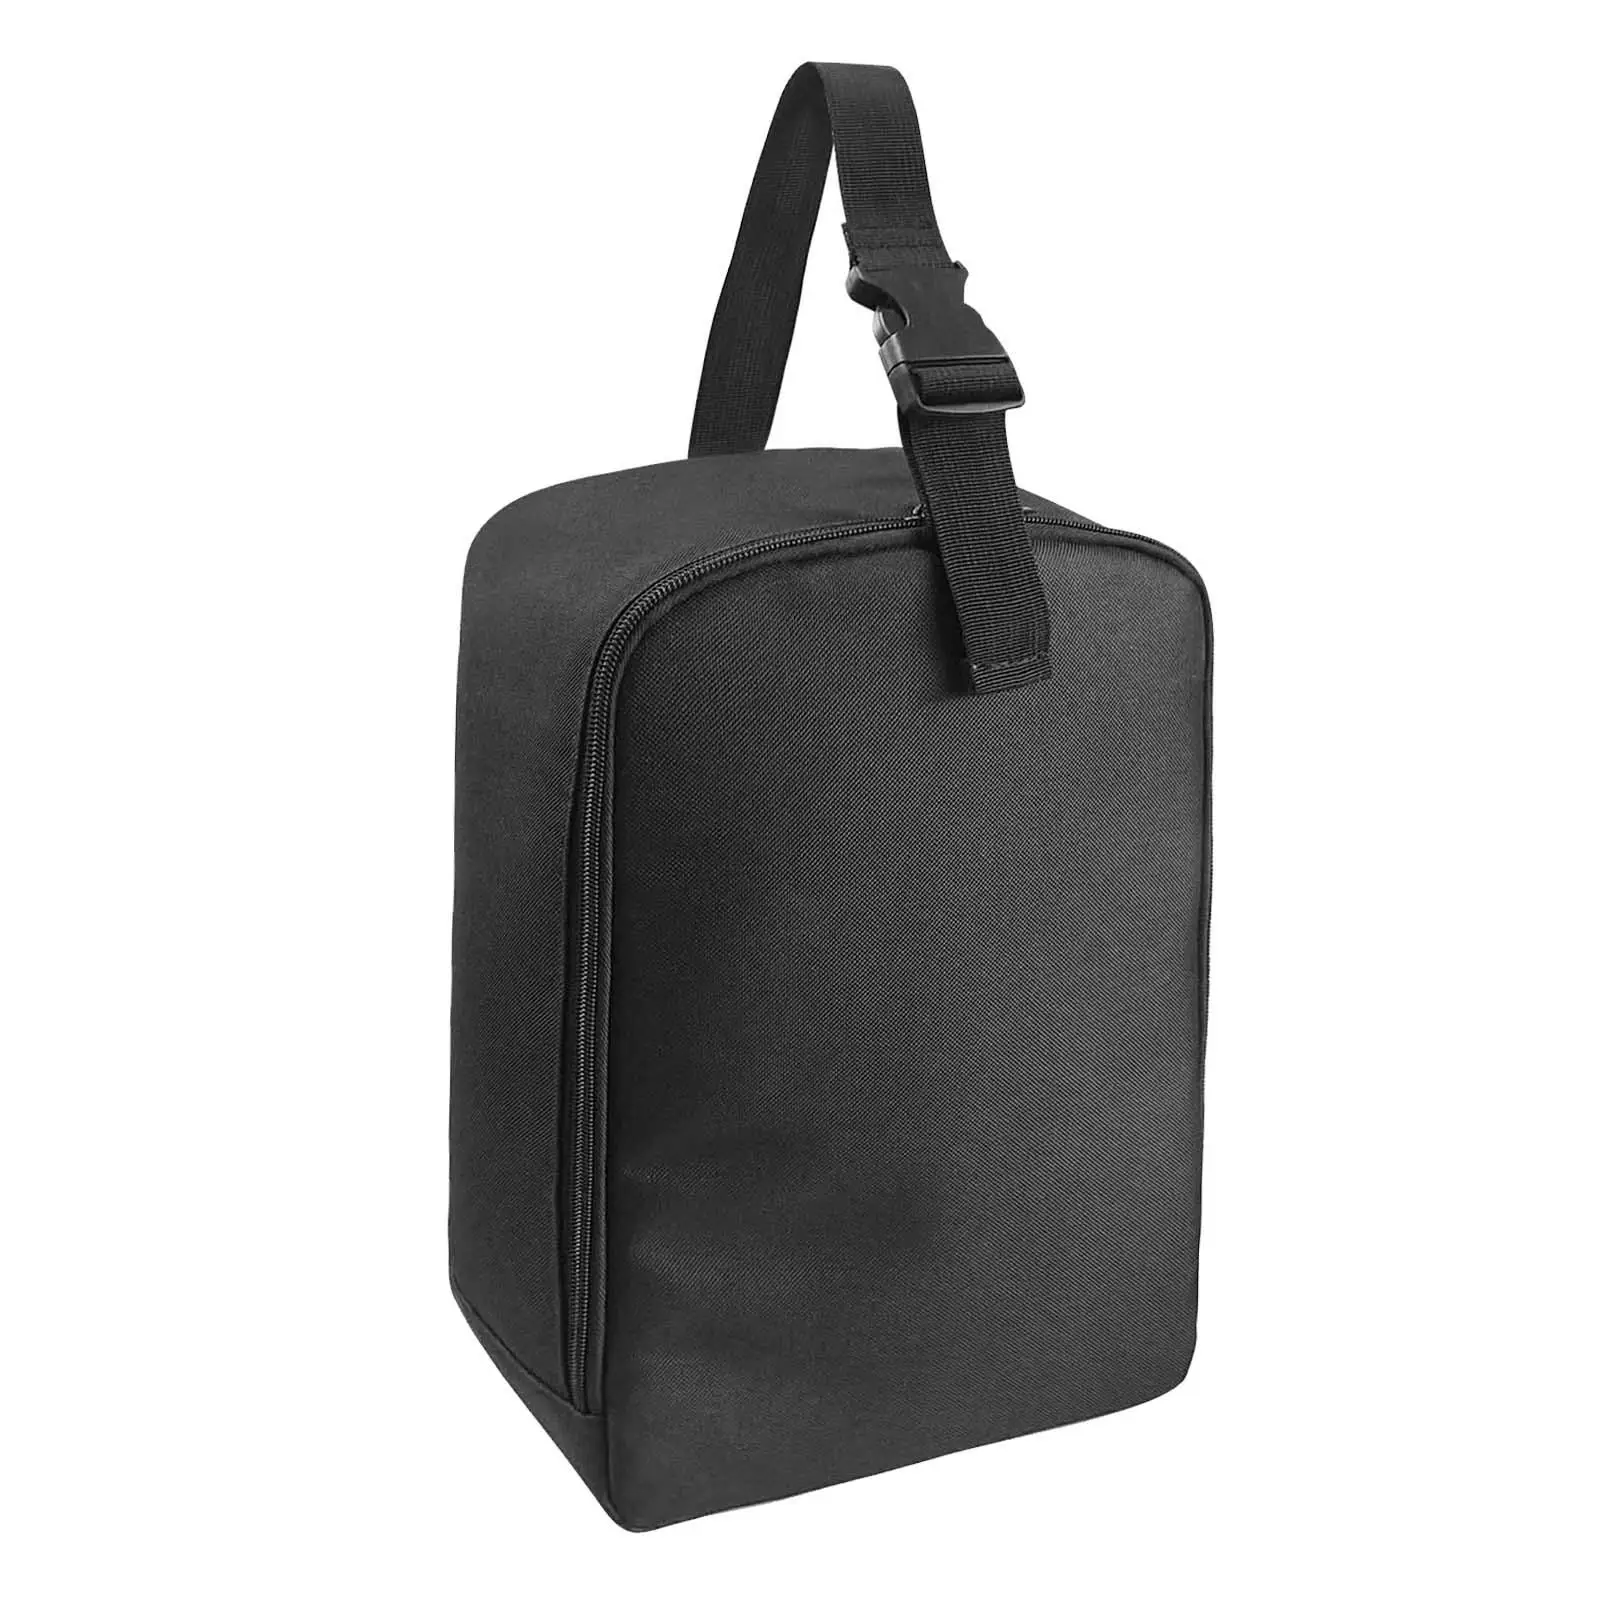 Garment Steamer Case Carrier Bag Portable Travel Steamer Bag for Travel Trip